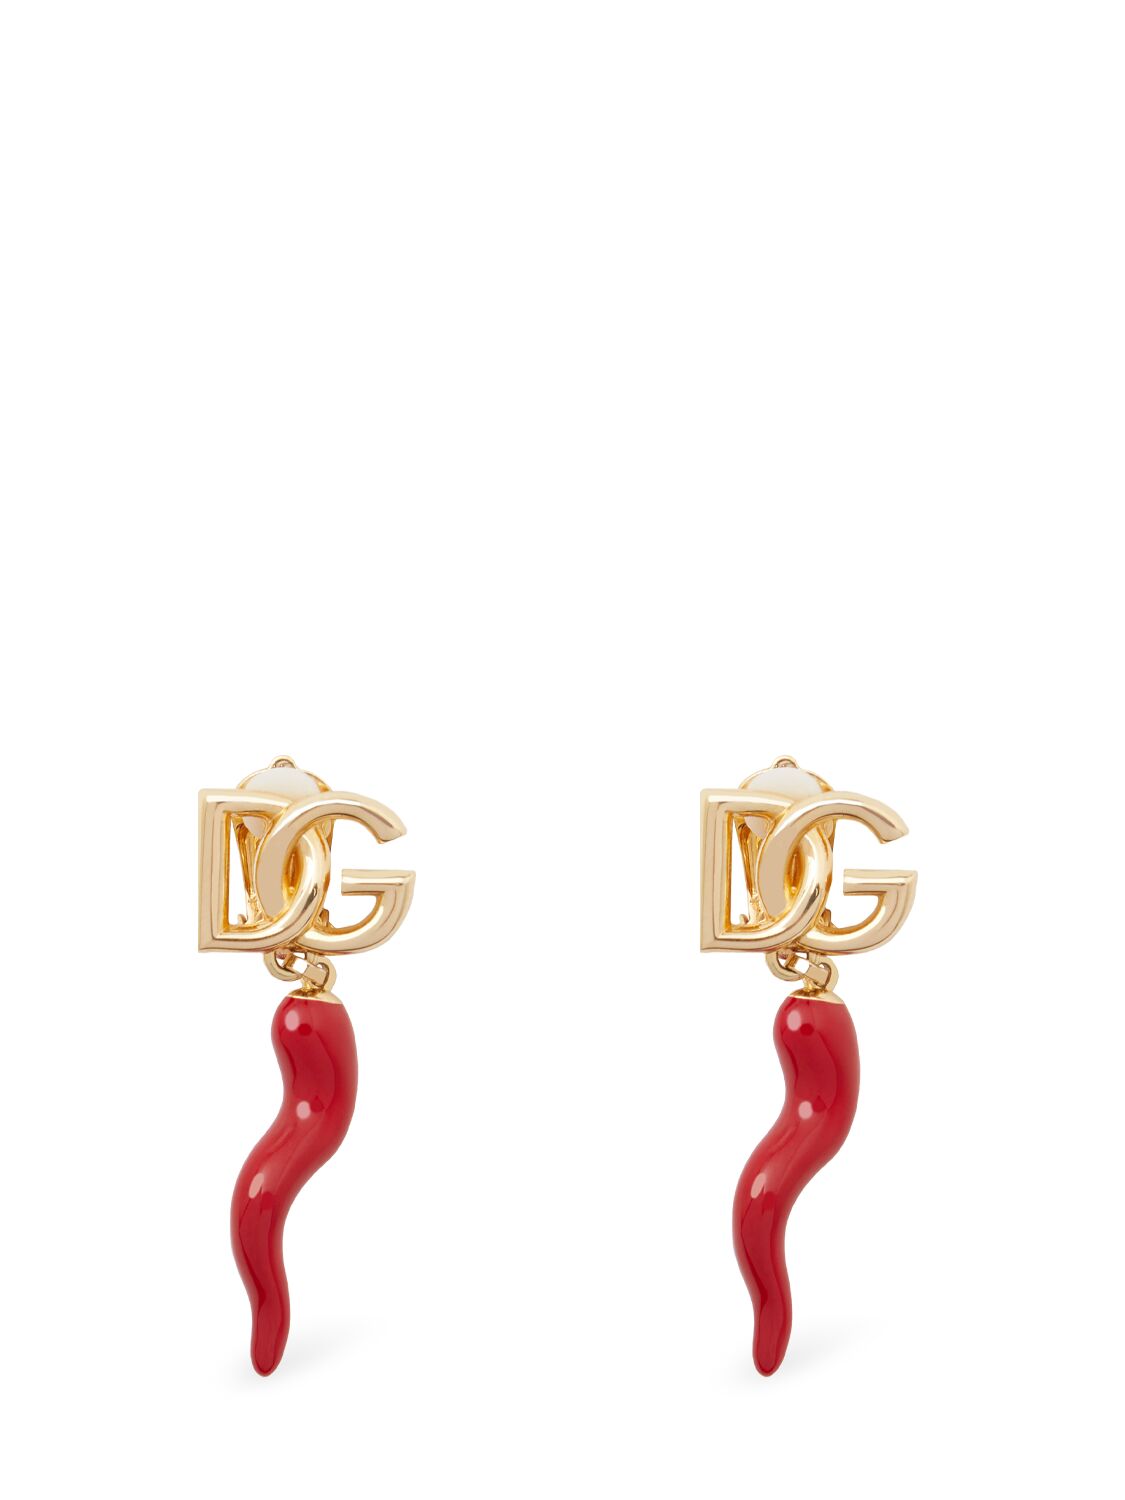 Dolce & Gabbana Dg Charm Earrings In Red